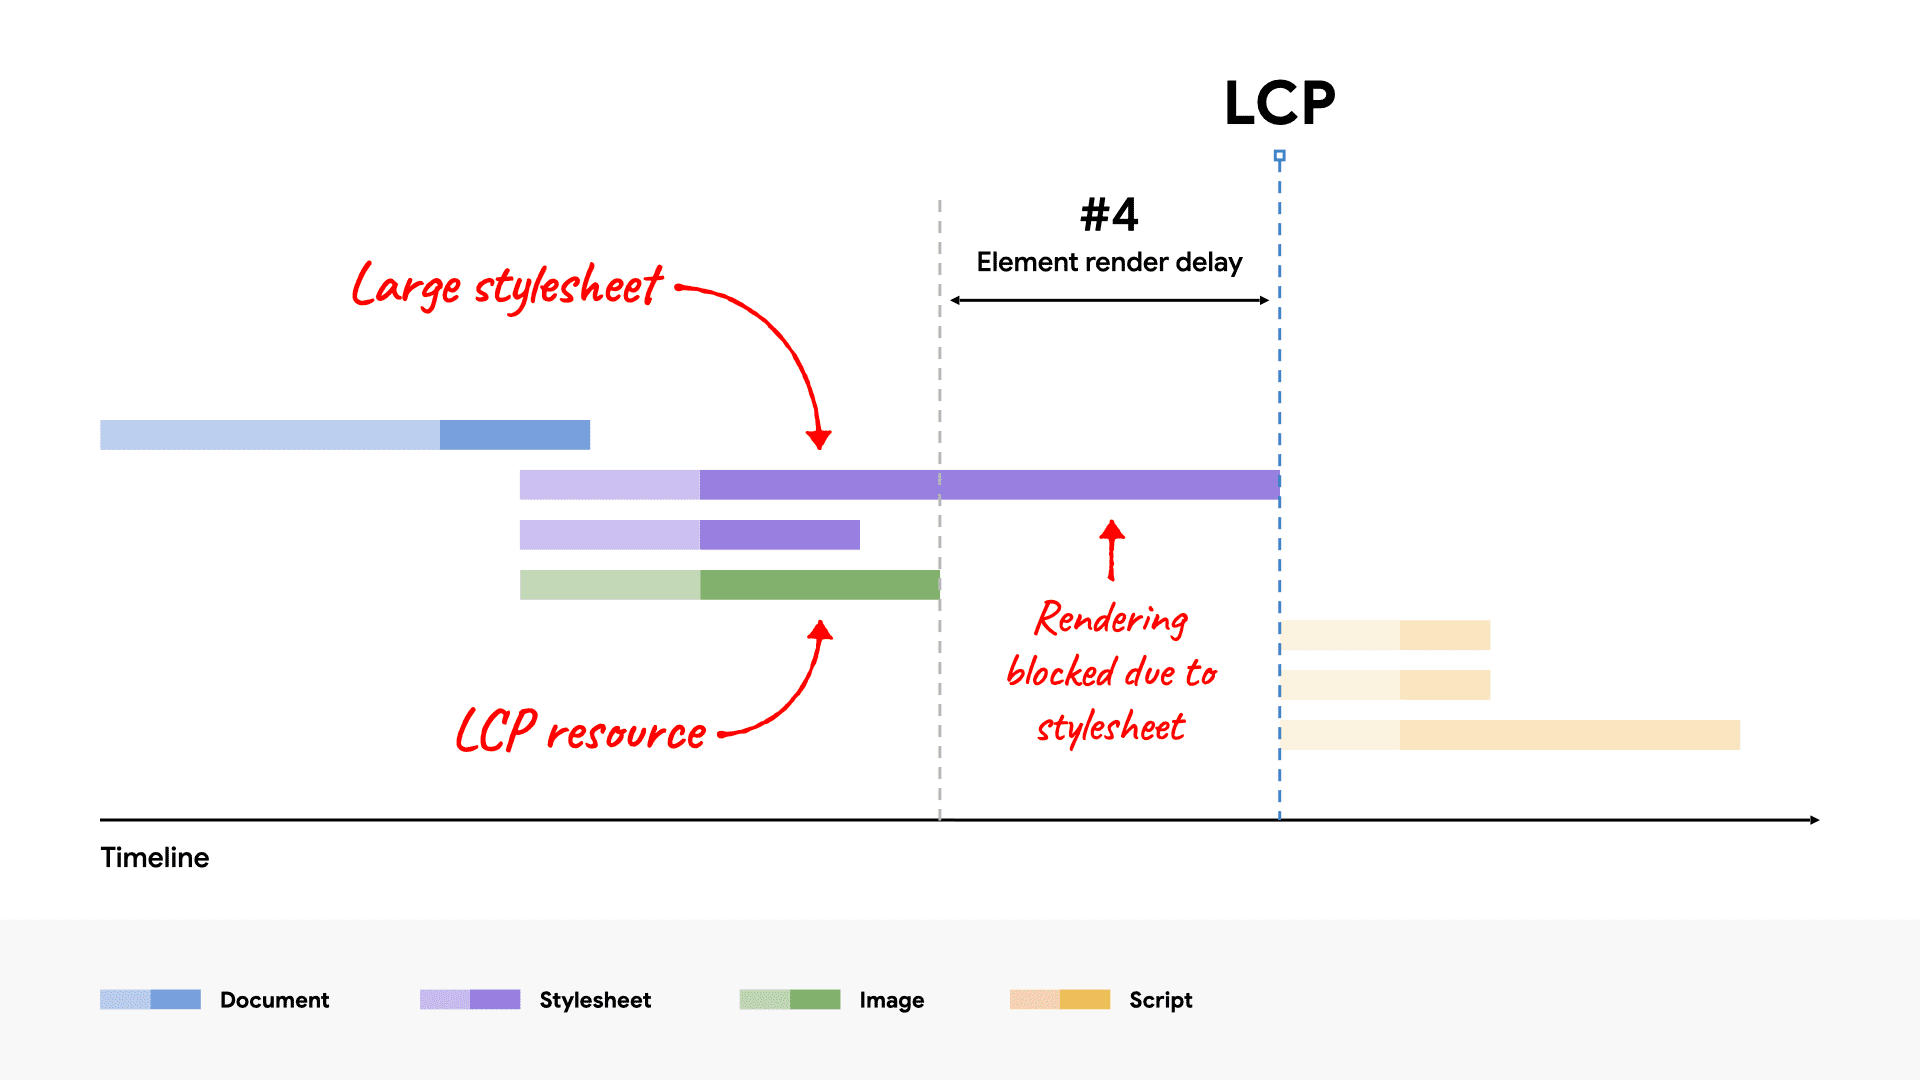 Водопадная диаграмма сети, показывающая большой файл CSS, блокирующий отрисовку элемента LCP, поскольку его загрузка занимает больше времени, чем загрузка ресурса LCP.